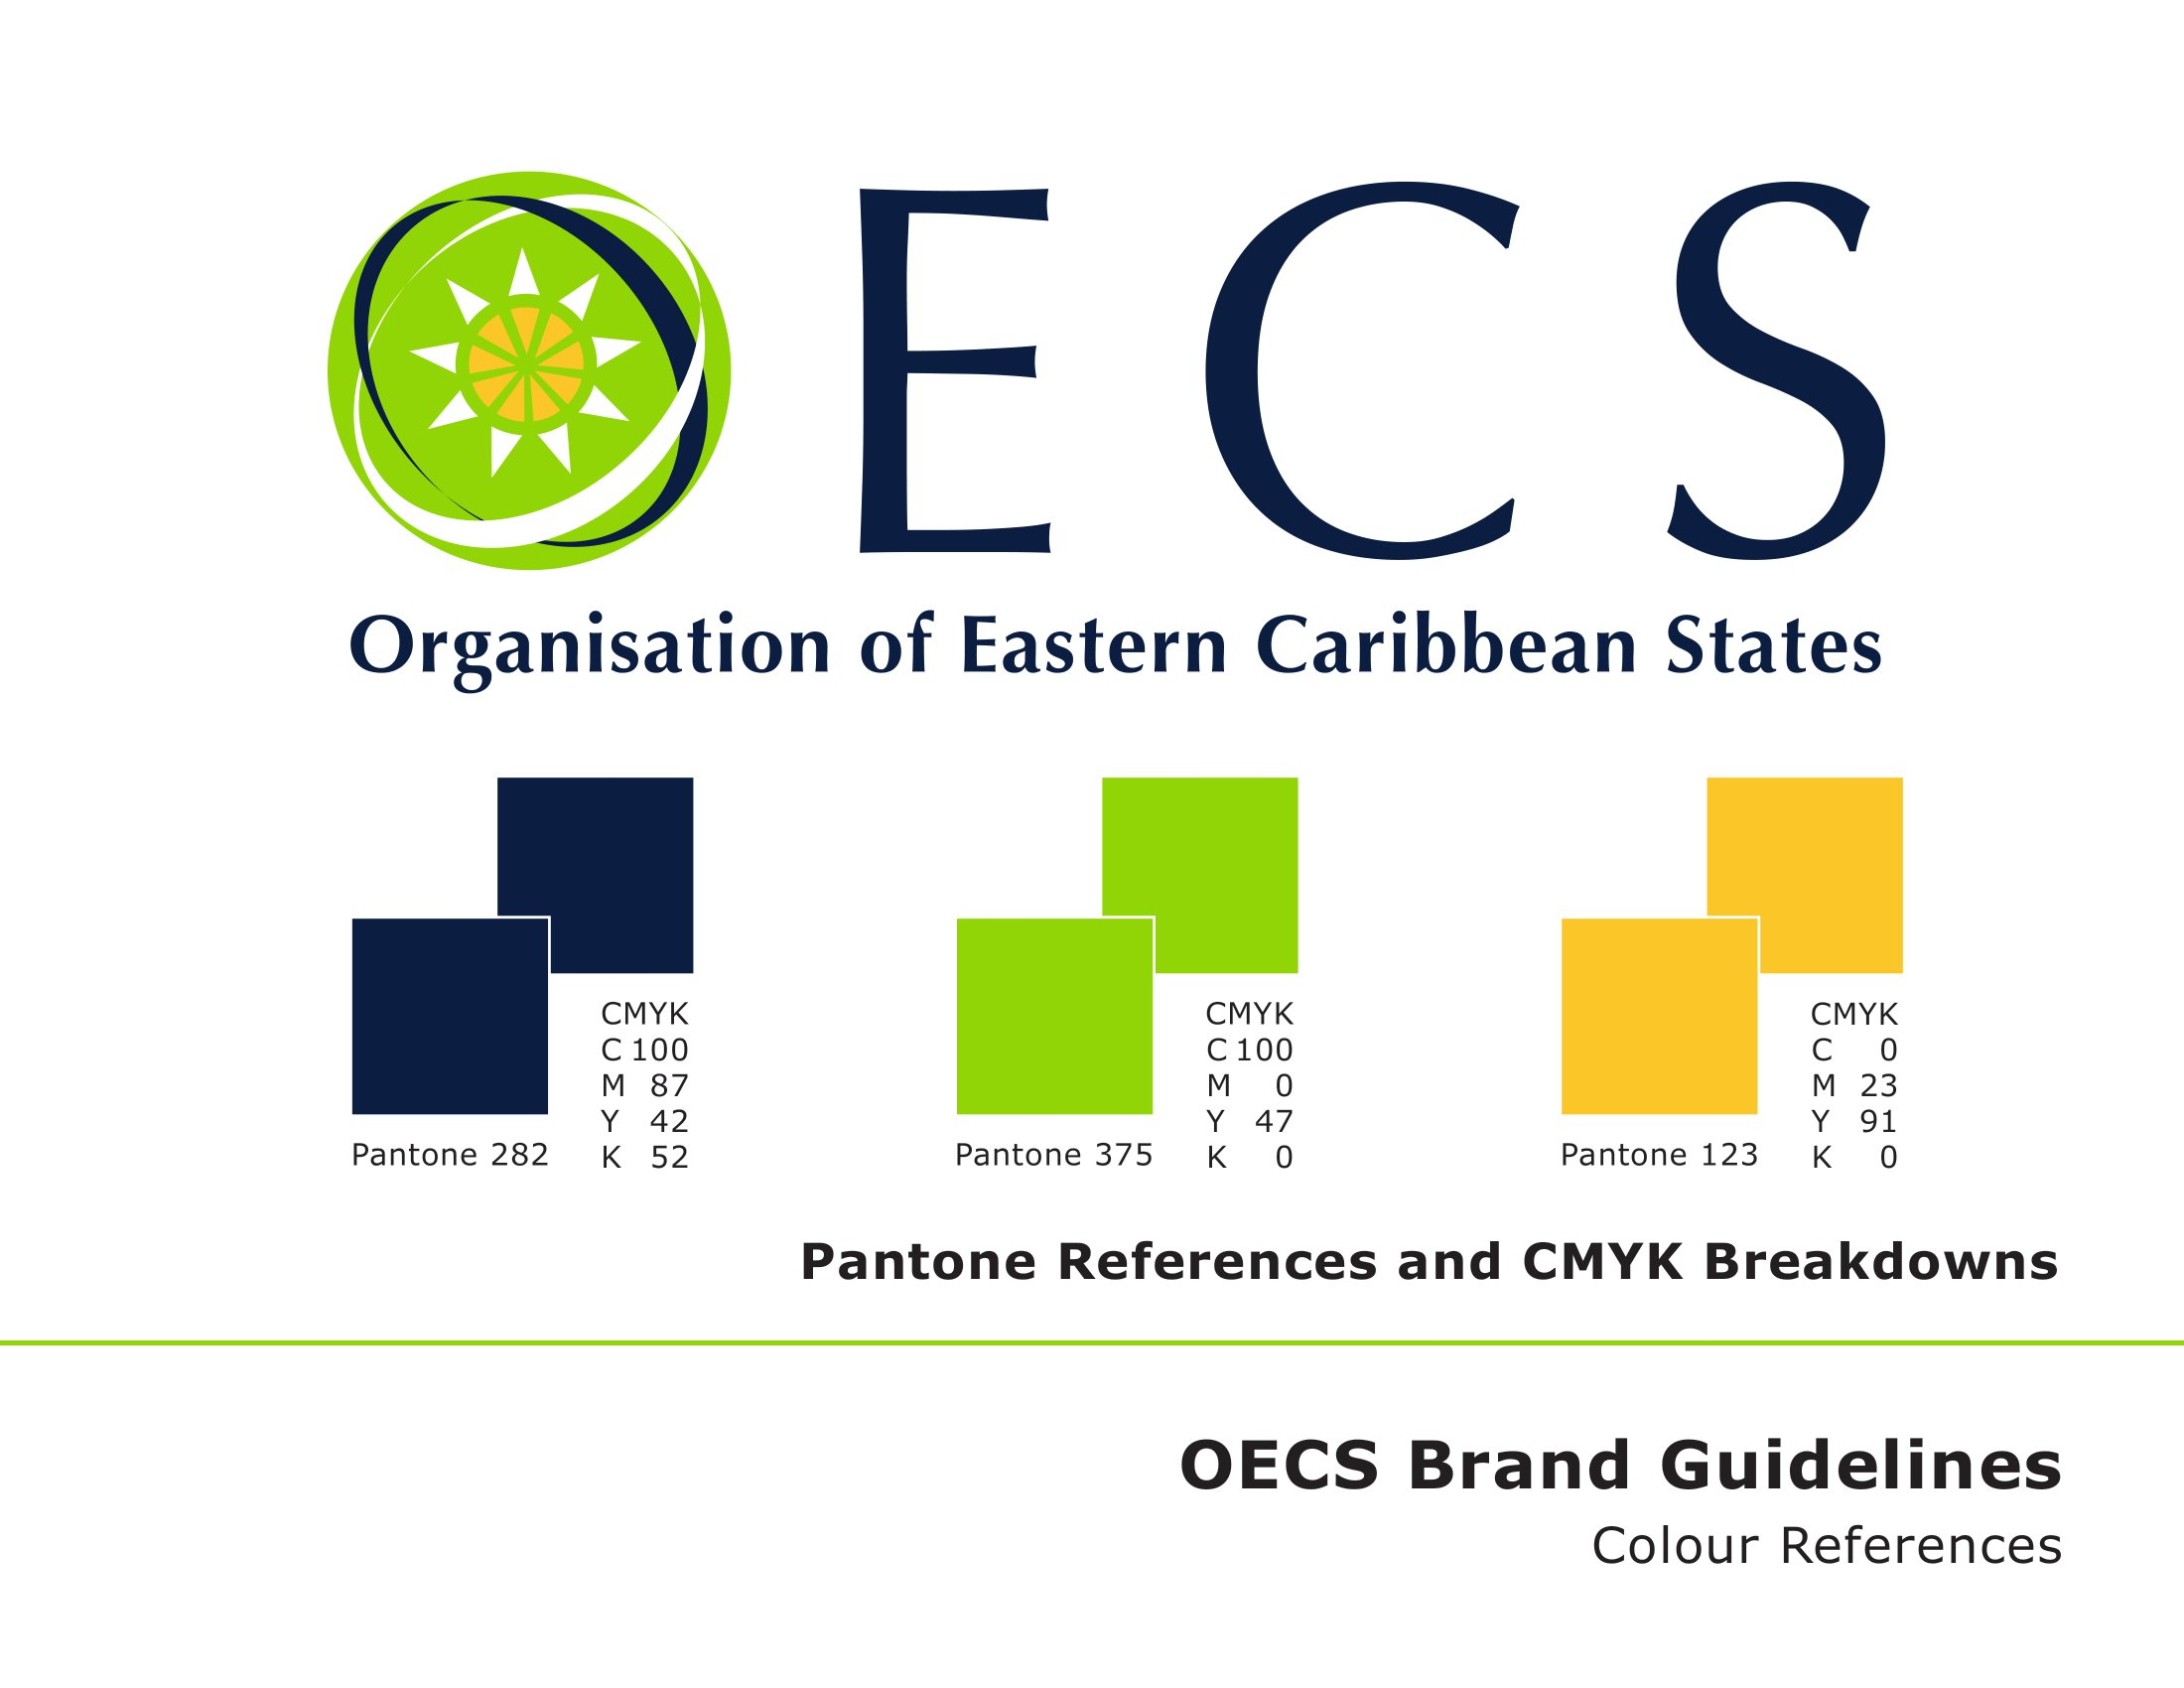 OECS Branding Guideline